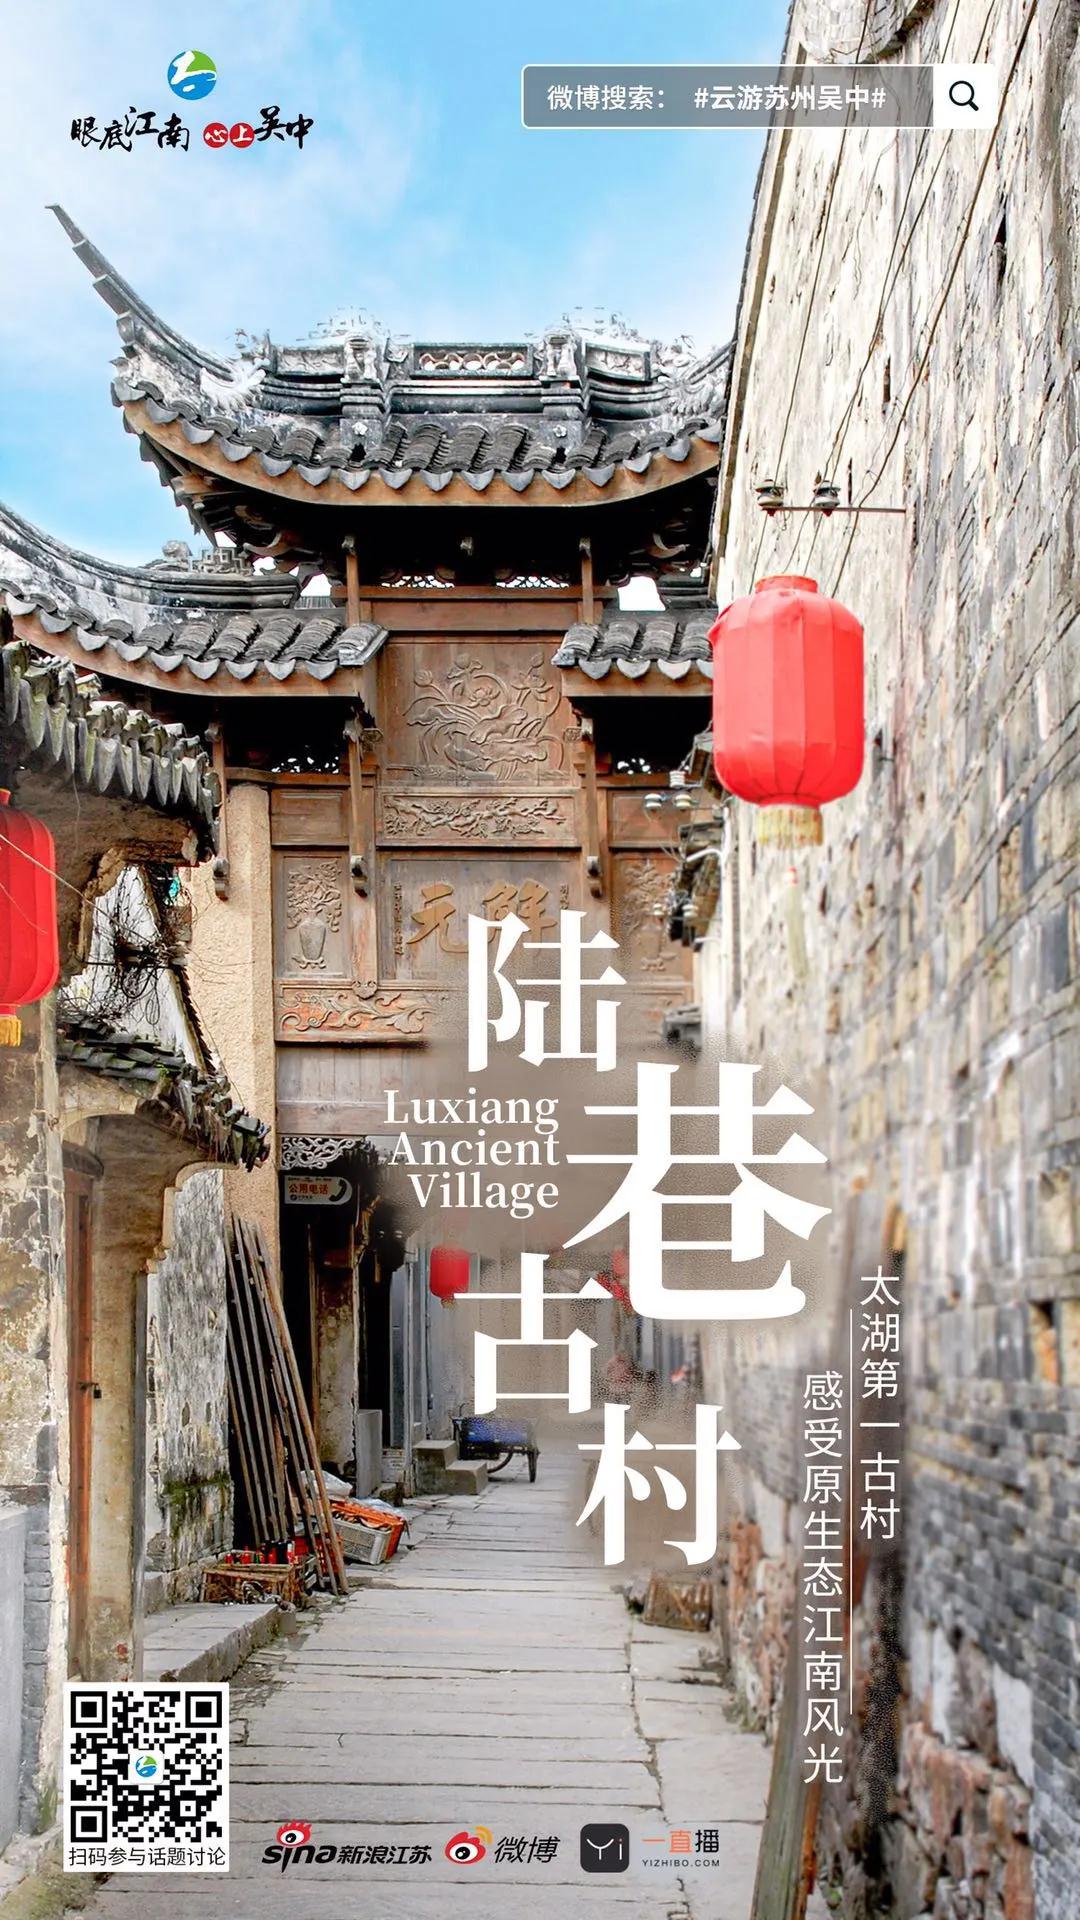 就在明天！2020苏州吴中太湖文化旅游节云开幕